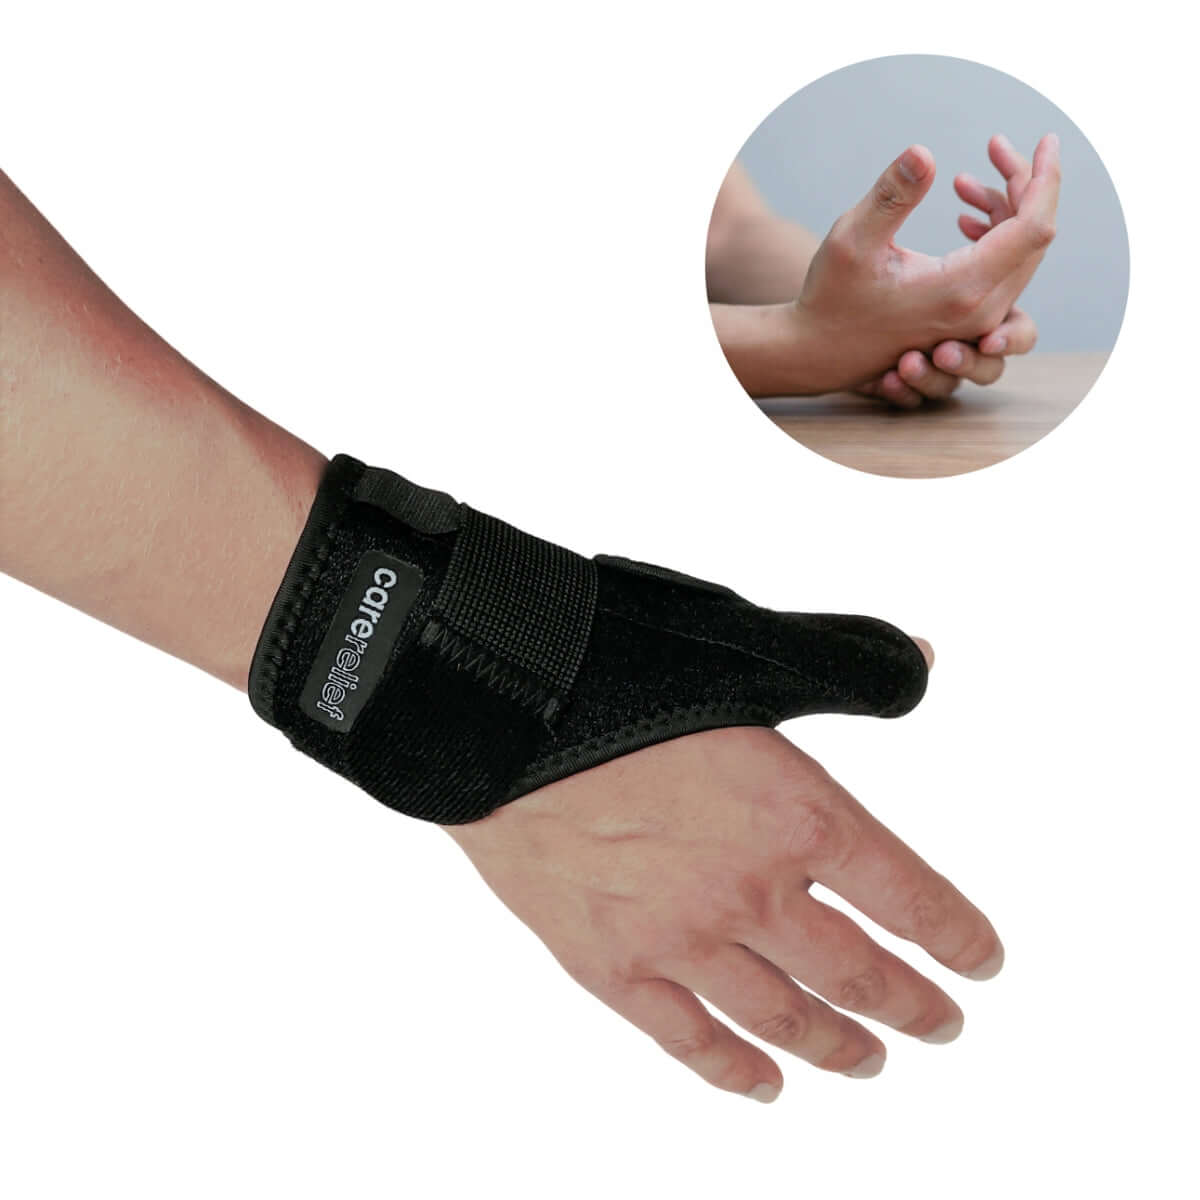 Tommelfingerskinne og håndledsstøtte, 2 velcro-bånd for nem justering - Bedste pris på komfortabel tommelbandage - Støtter og aflaster tommel, hånd og håndled ved skader og smerter fra overbelastning. og slidgigt - Bedste pris online